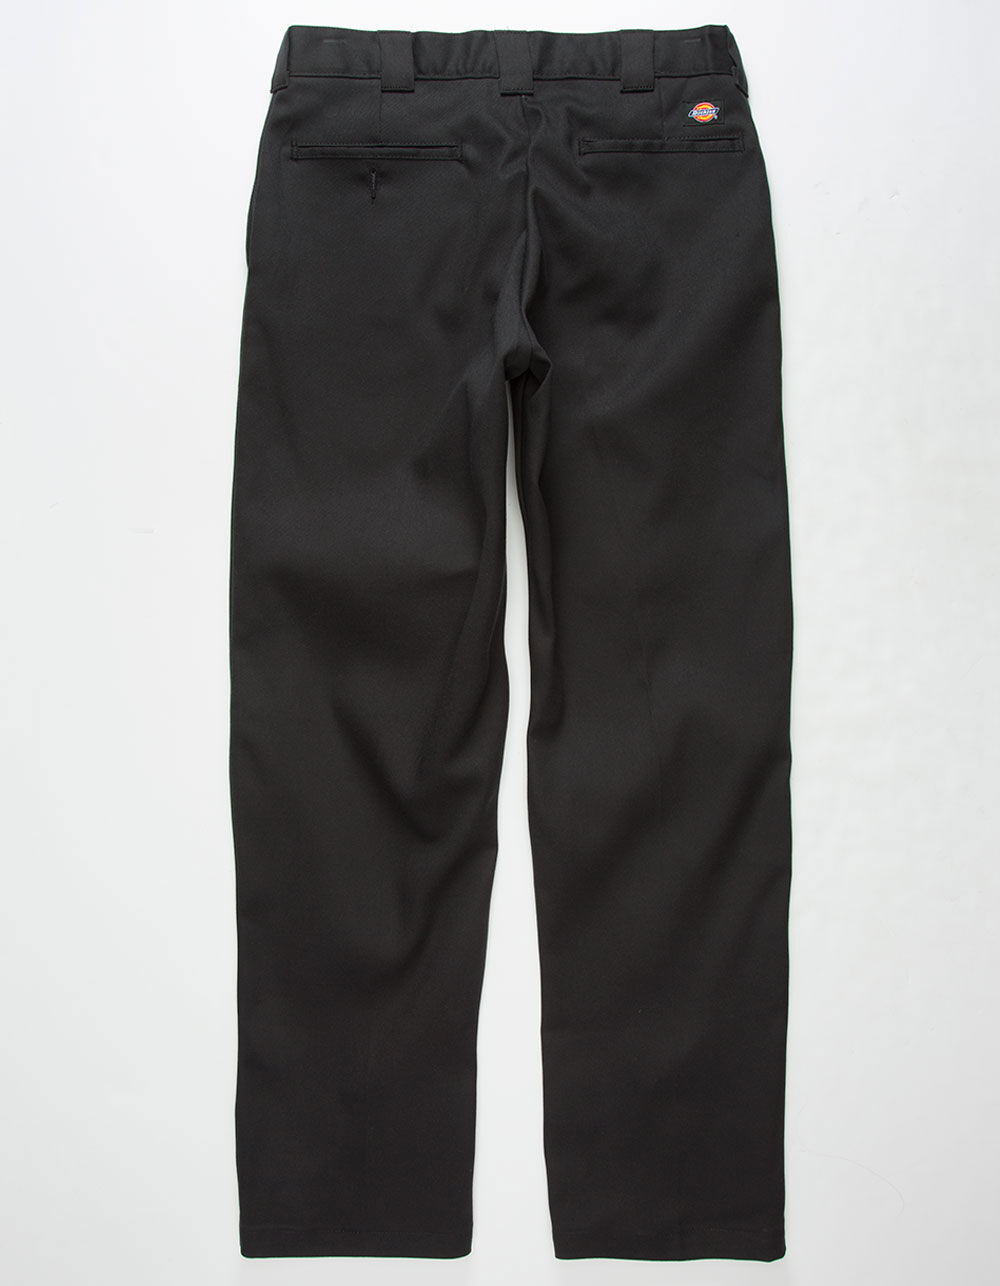 Dickies Pants  874 Pants Black - Mens ⋆ Drzubedatumbi